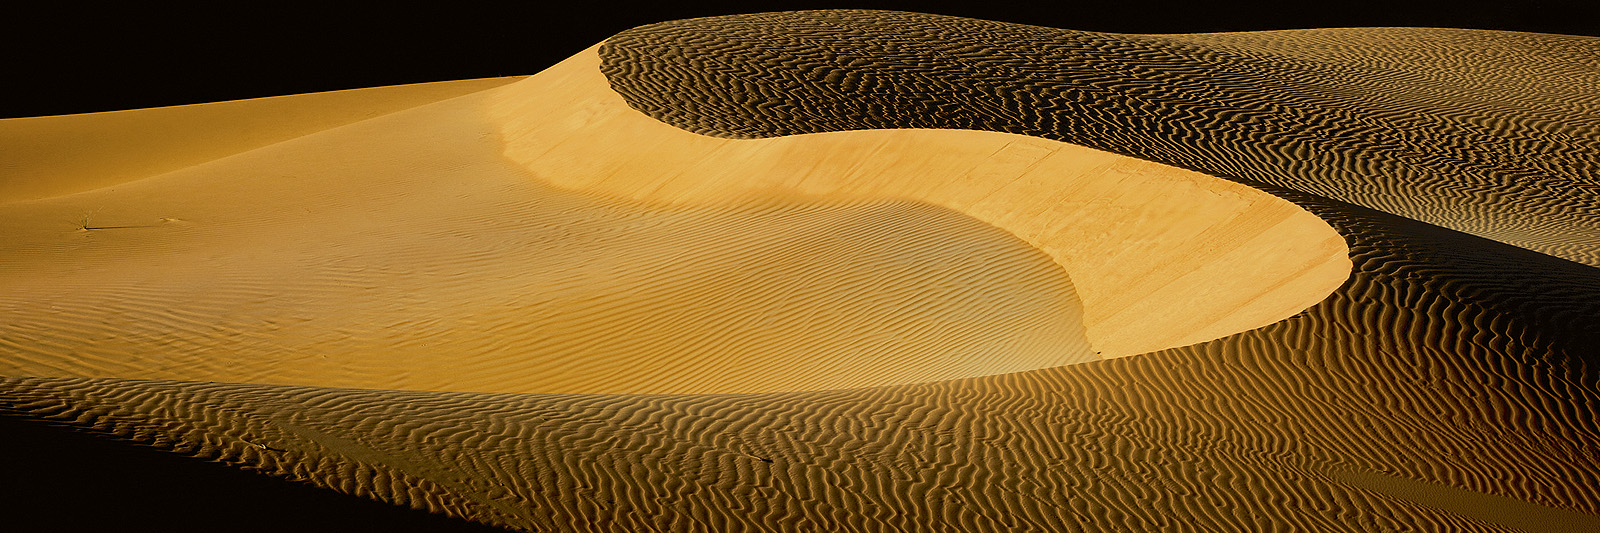 Planet Wüste – Abenteuer in Hitze und Eis